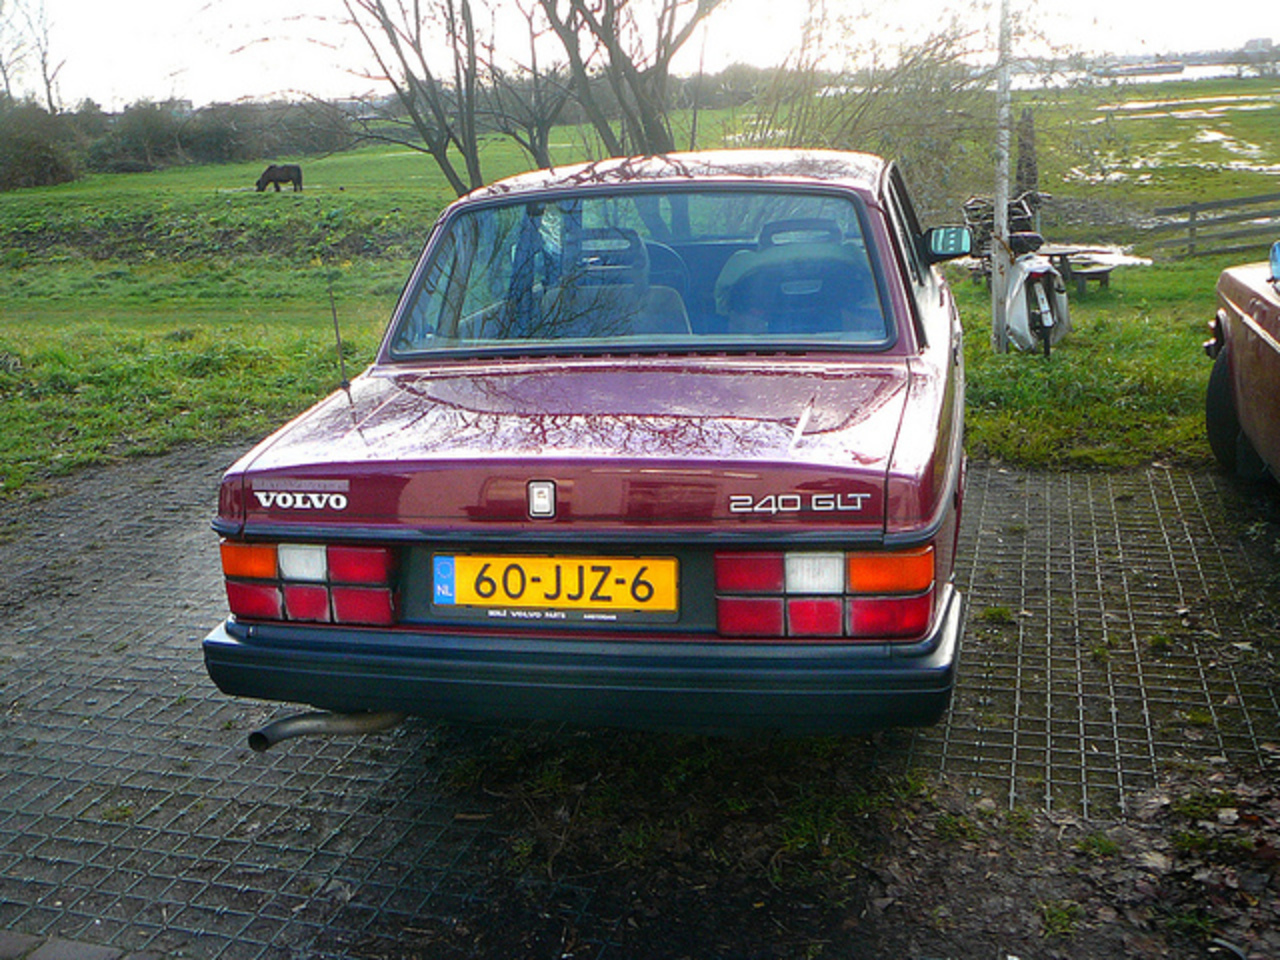 Volvo 240 GLT, 1987, Amsterdam, Nieuwendammerdijk, 12-2011 ...